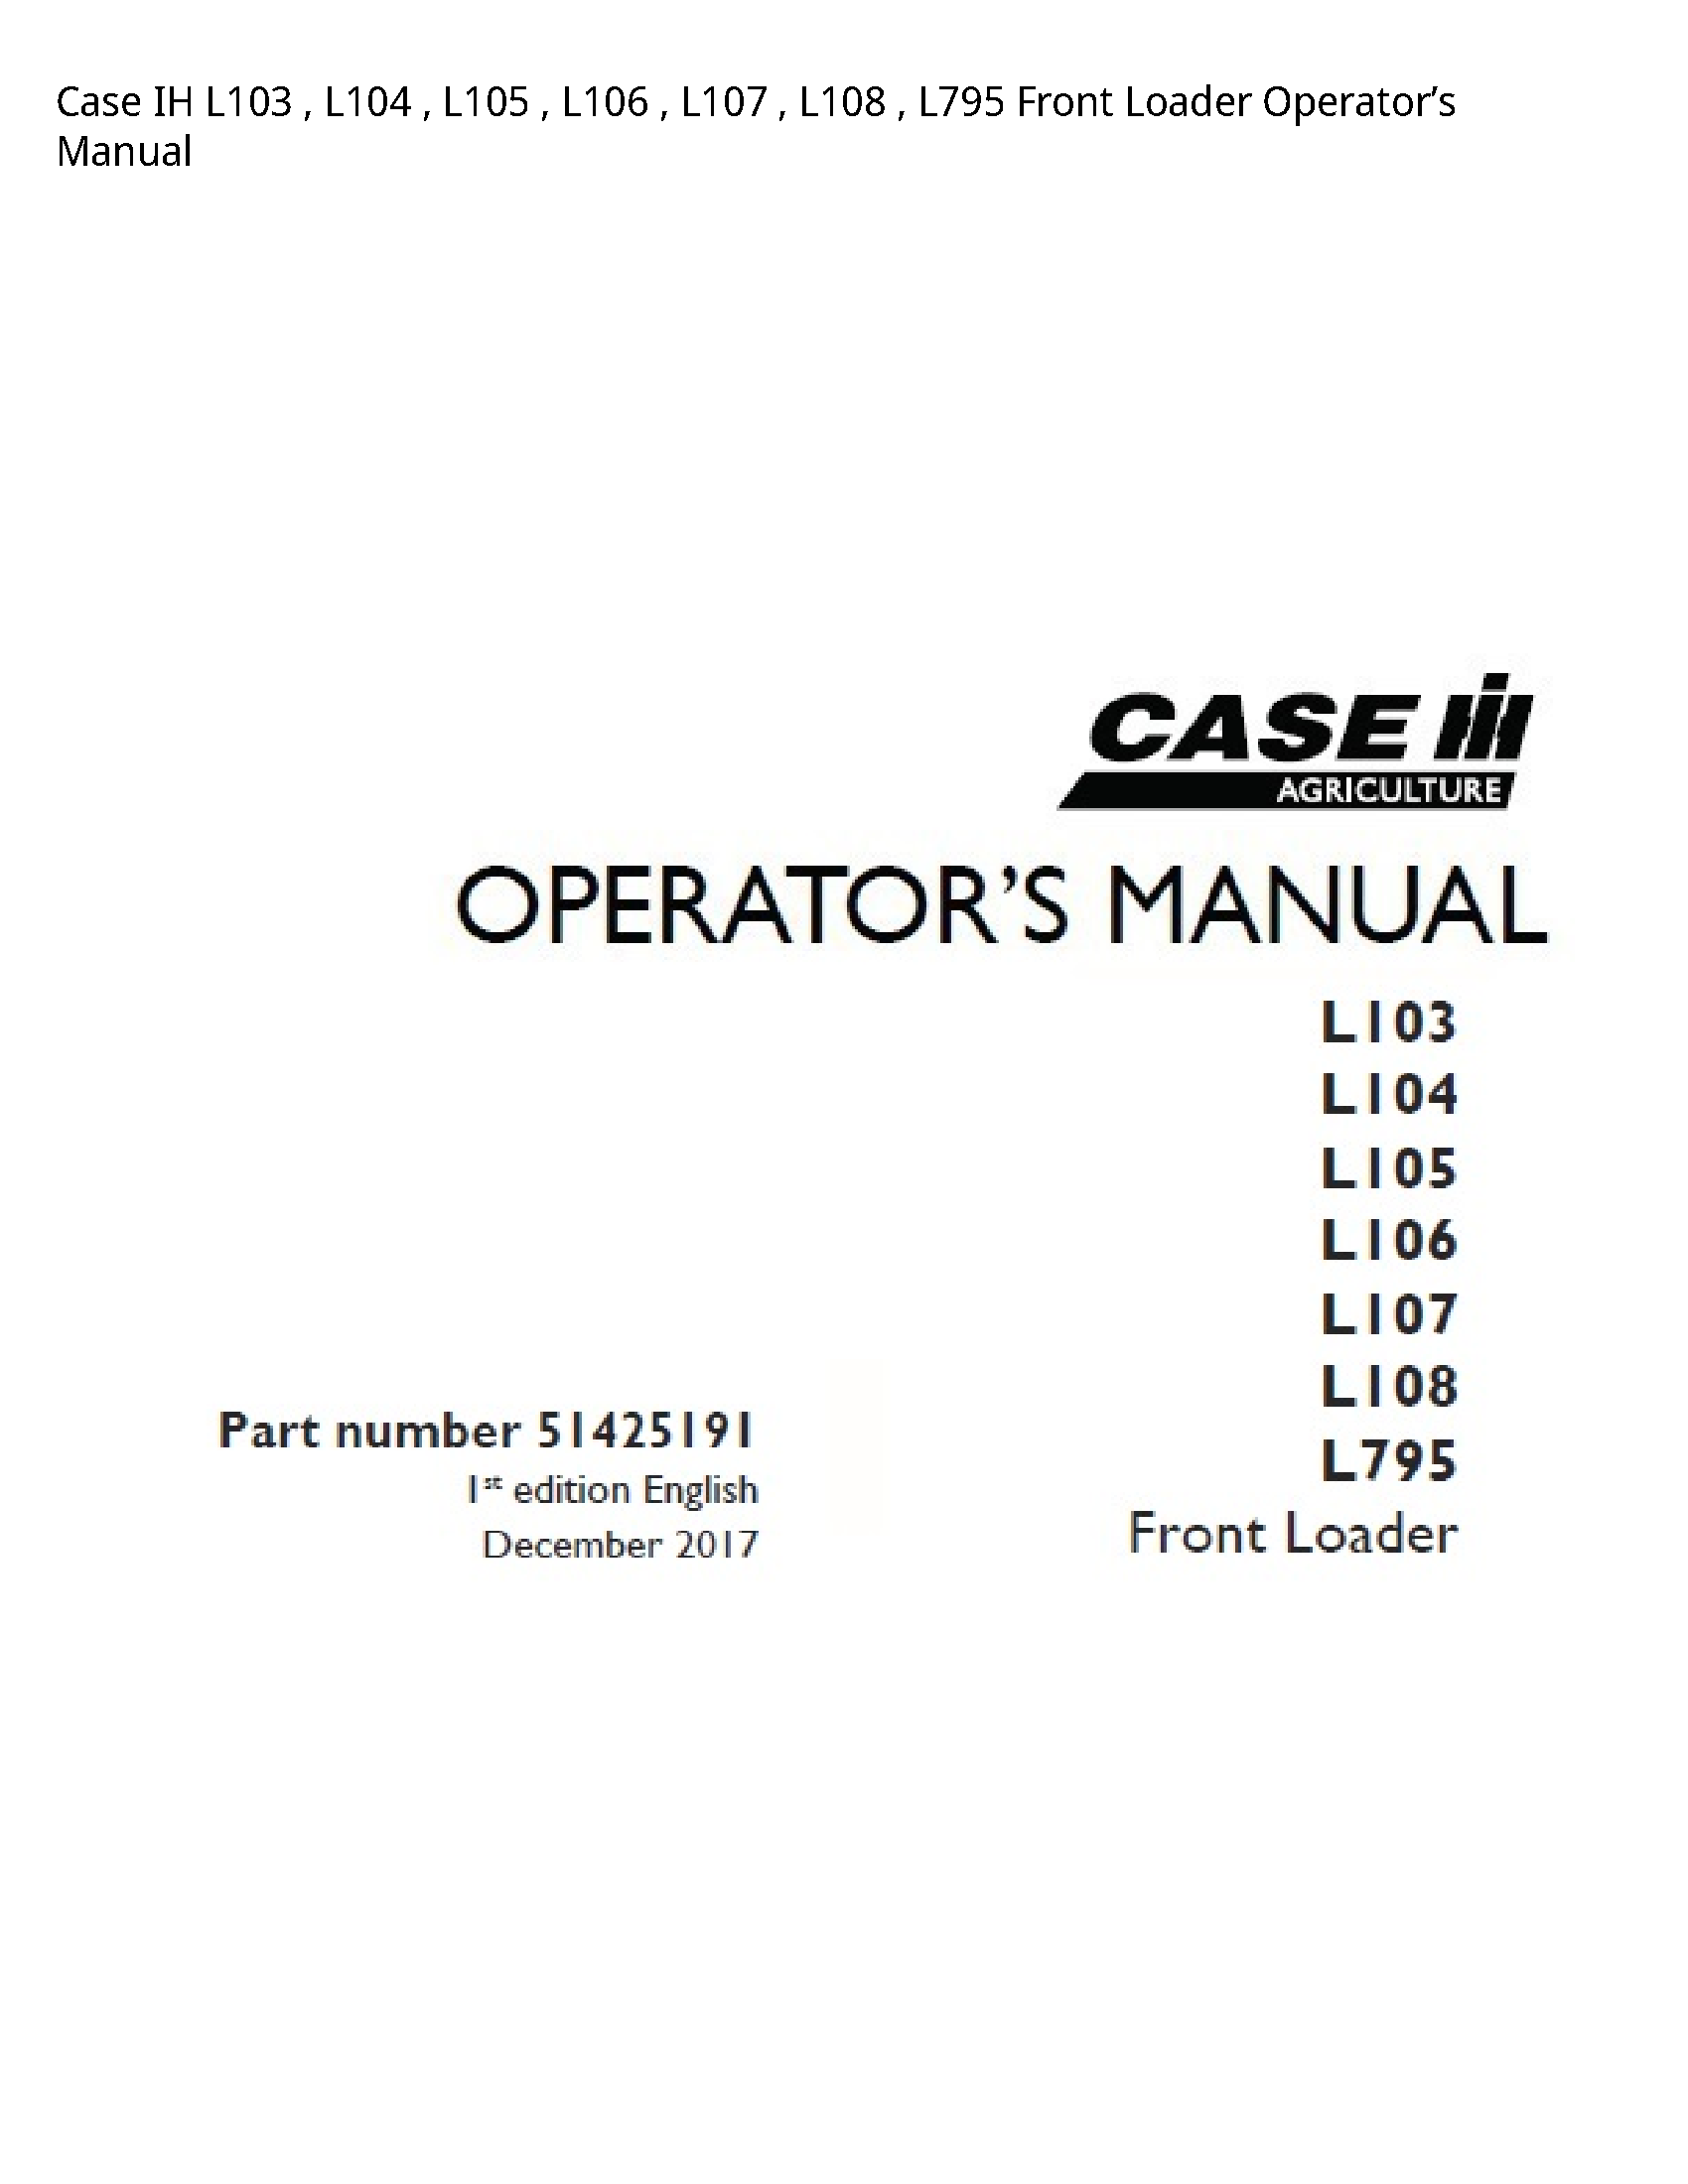 Case/Case IH L103 IH Front Loader Operator’s manual